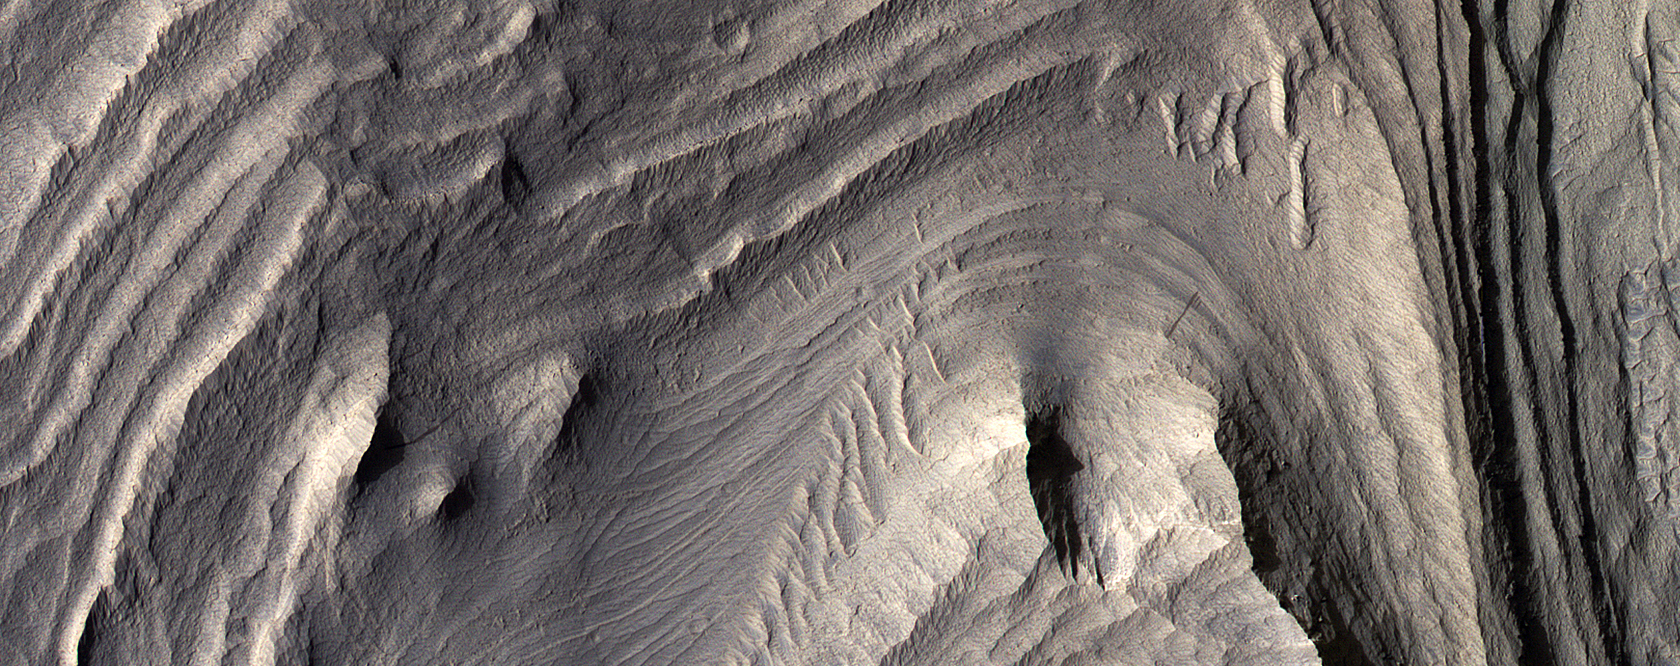 Sedimentos estratificados en Valles Marineris